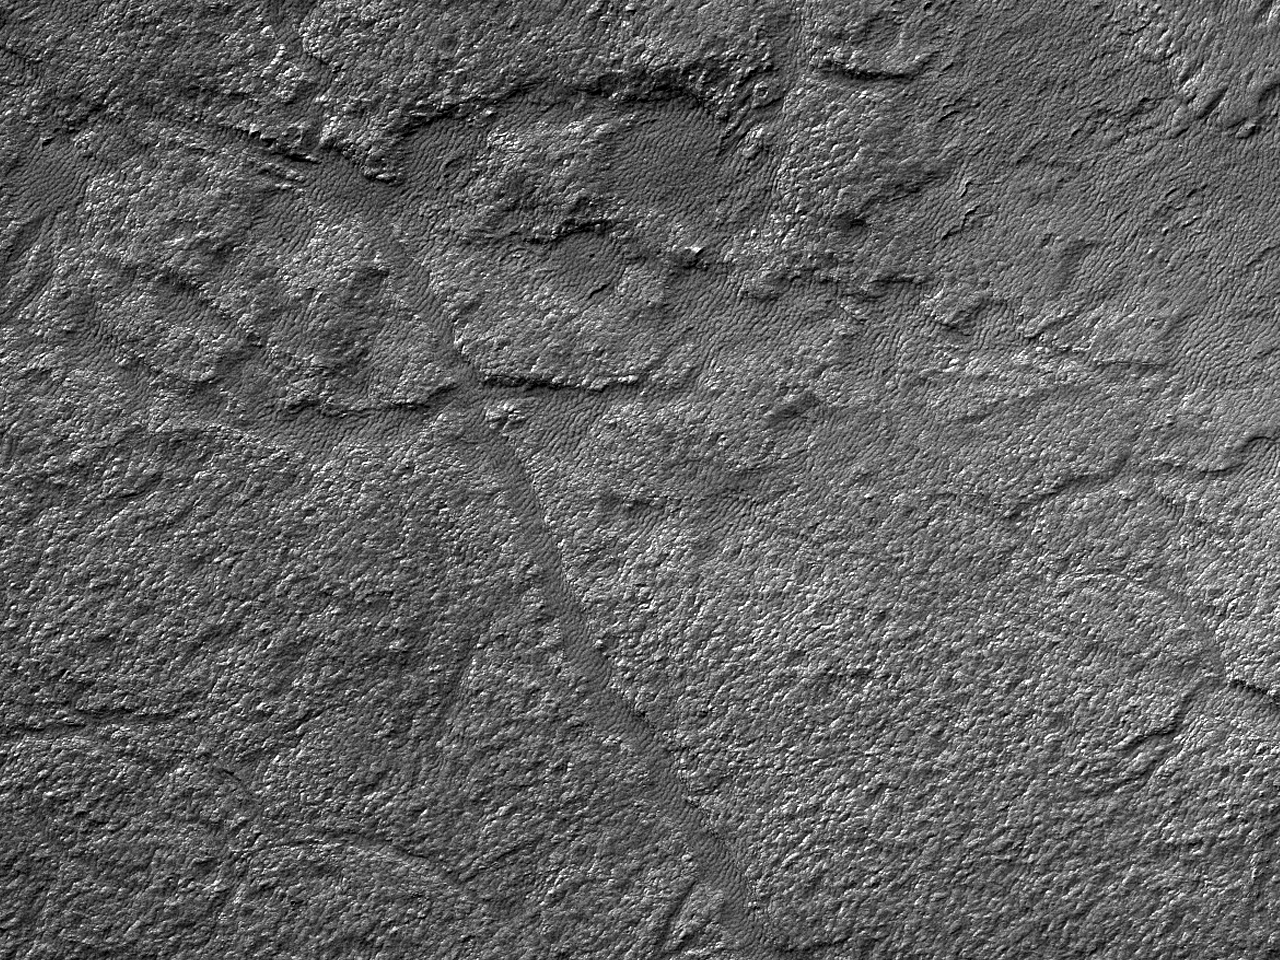 李奥陨石坑底部的地面形态 (Lyot Crater)